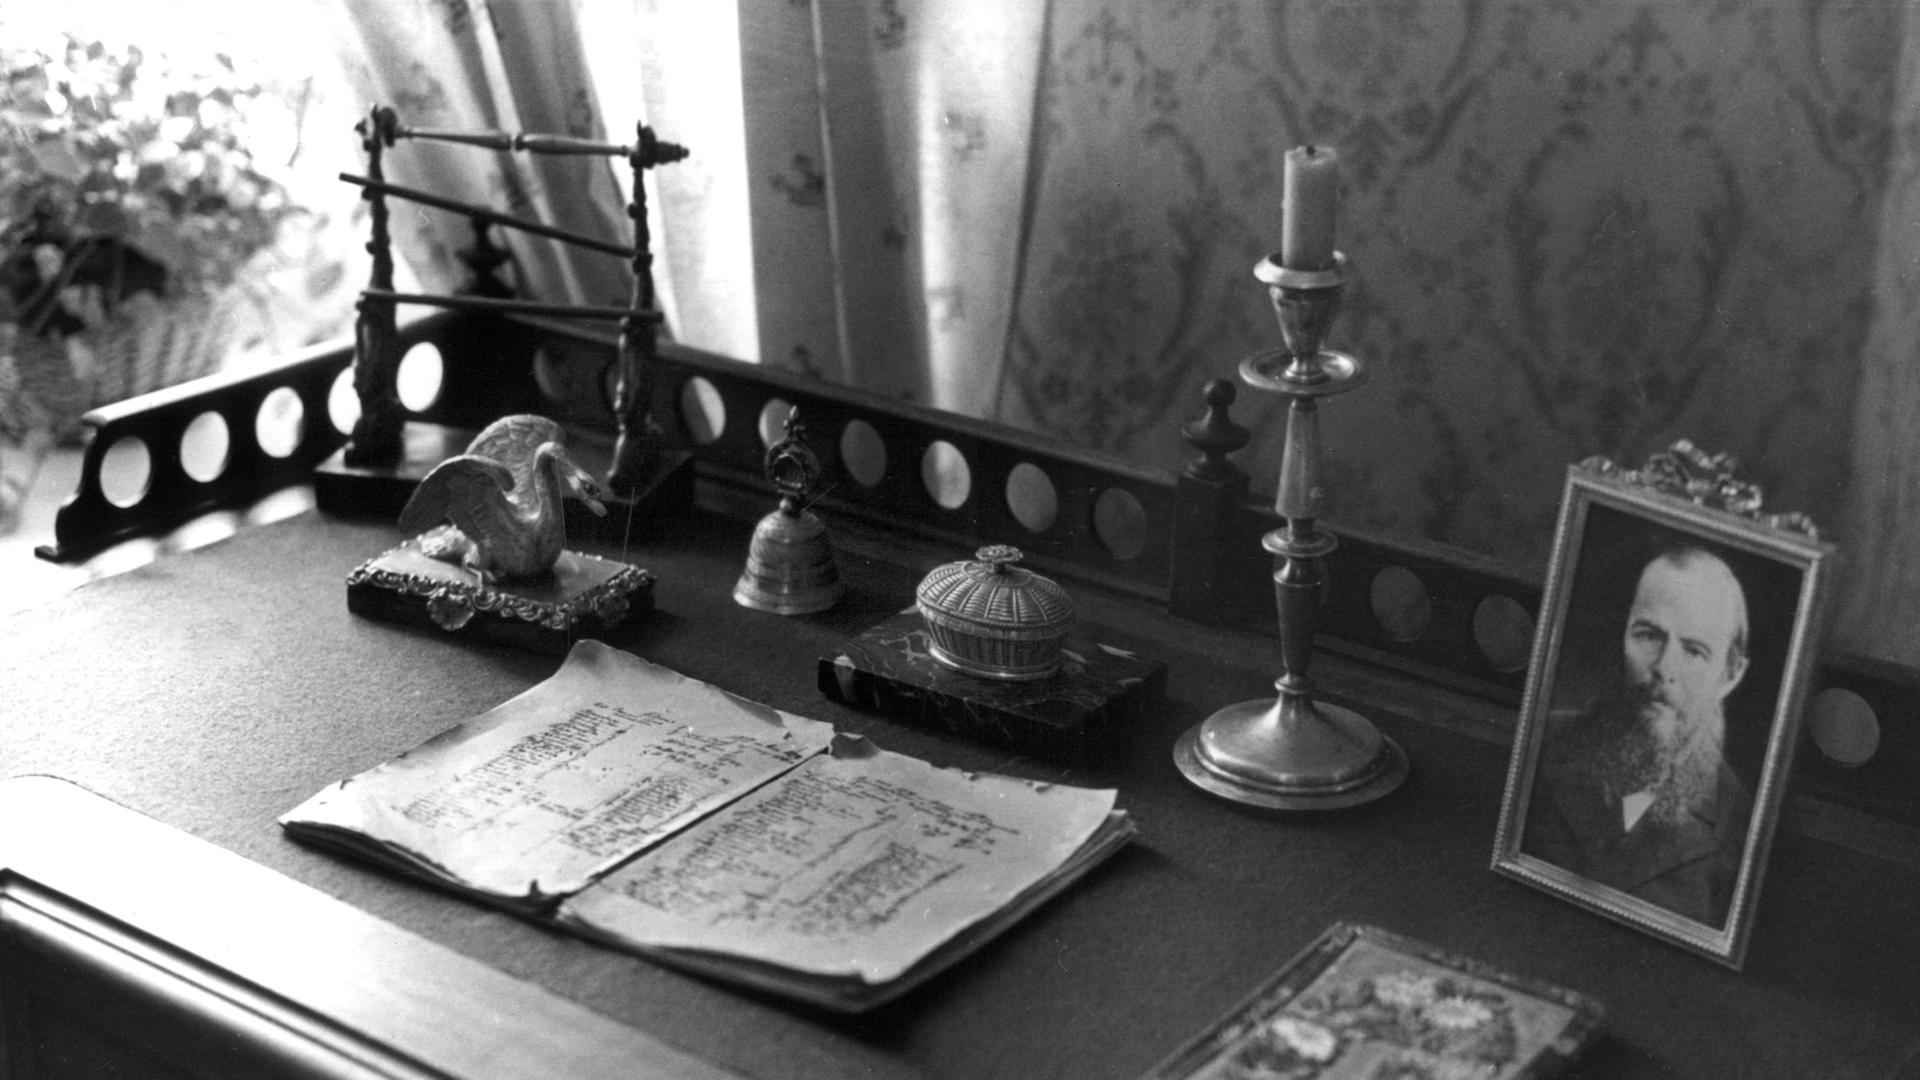 Der Schreibtisch des russischen Dichters Fjodor Michailowitsch Dostojewski im Museum in der Kusnetschni Straße in Sankt Petersburg. (Aufnahme vom Januar 1992). Dostojewski wurde am 11. November 1821 in Moskau geboren und starb am 9. Februar 1881 in St. Petersburg. Zu seinen bekanntesten Werken gehören "Die Brüder Karamasow", "Schuld und Sühne" und "Der Idiot".